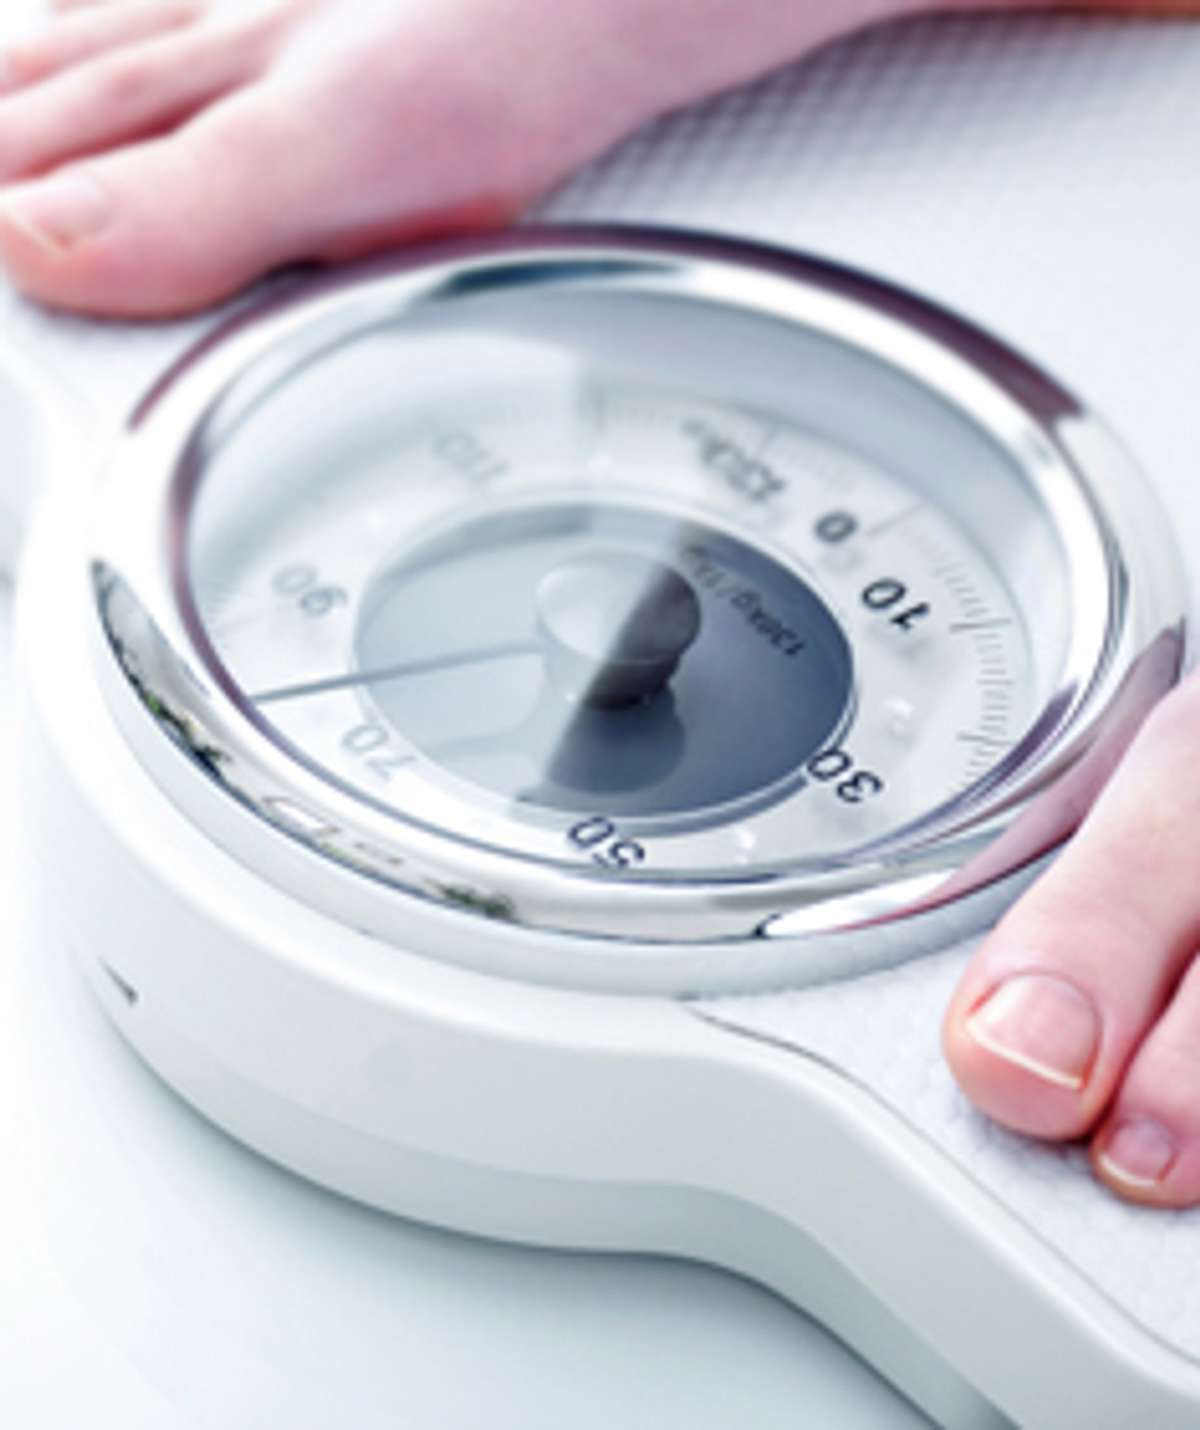 BMI Jugendliche: zu dünn, zu dick? Was ist okay?